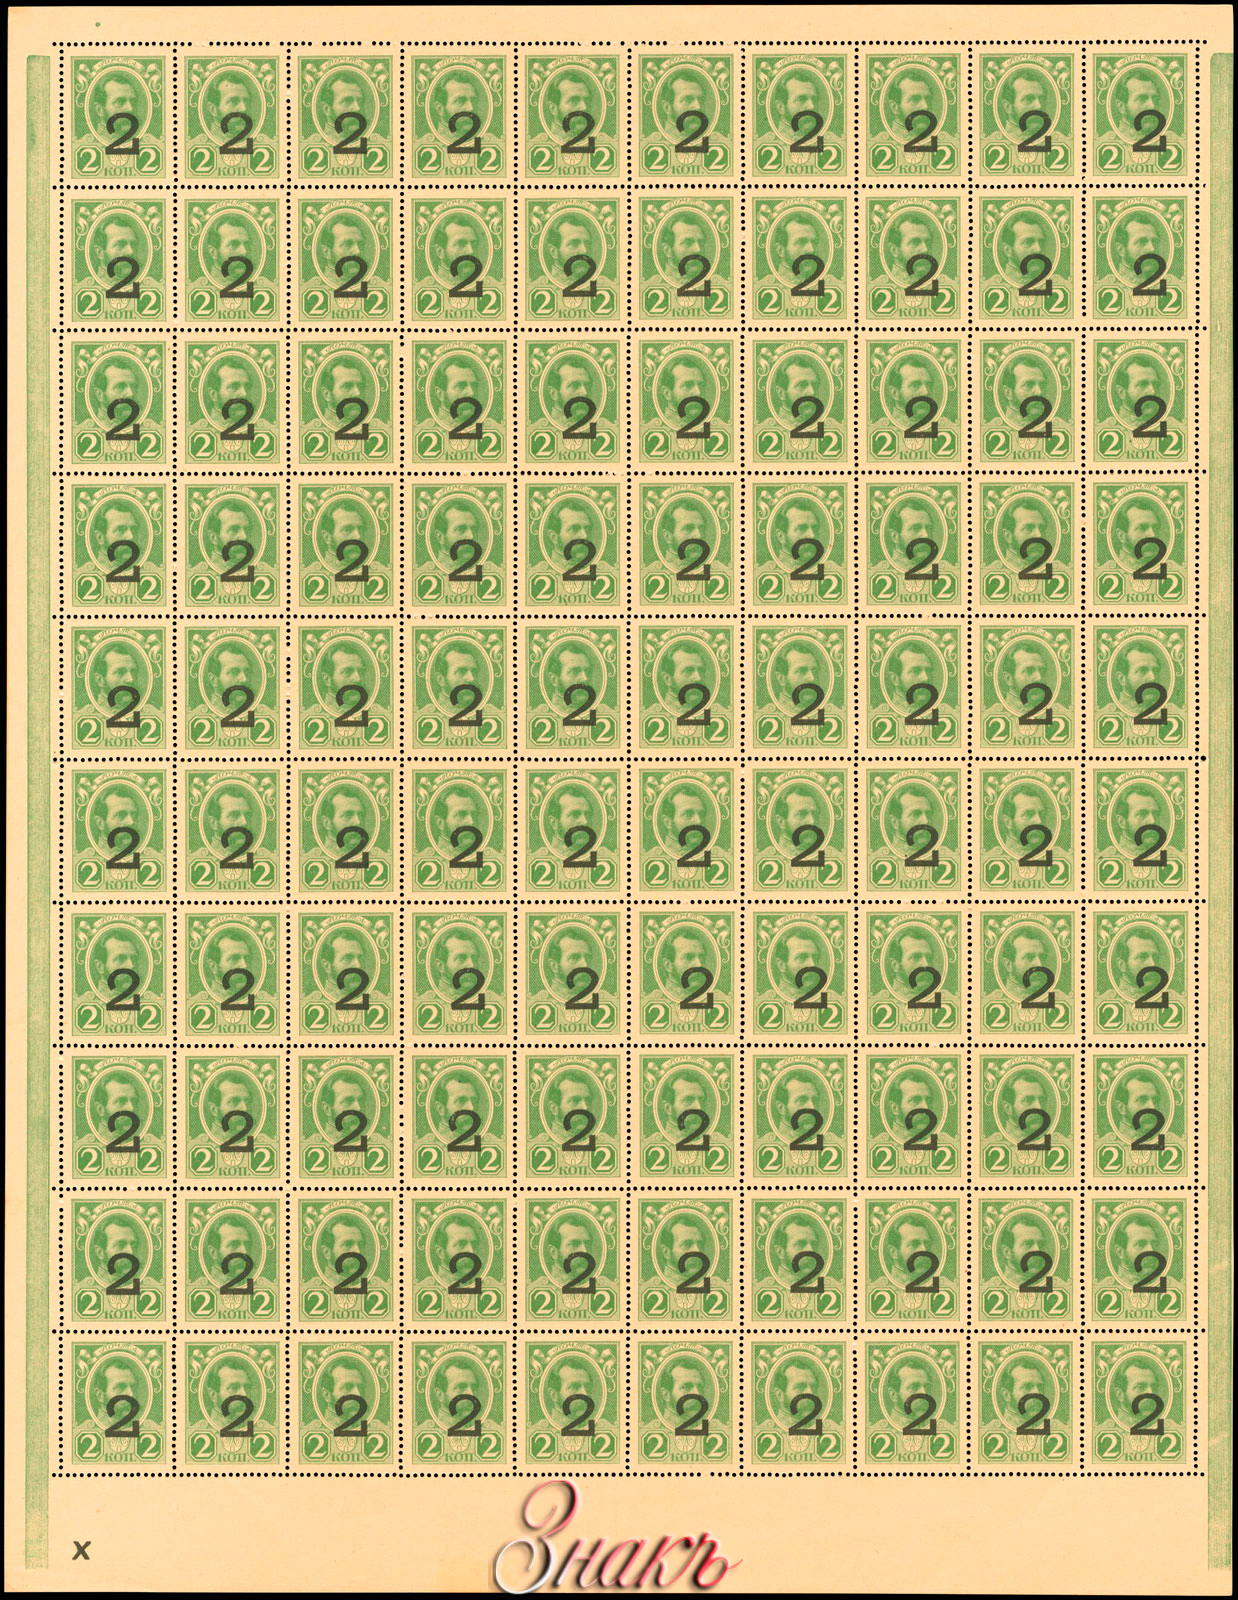   2  1915   100  (10  10)